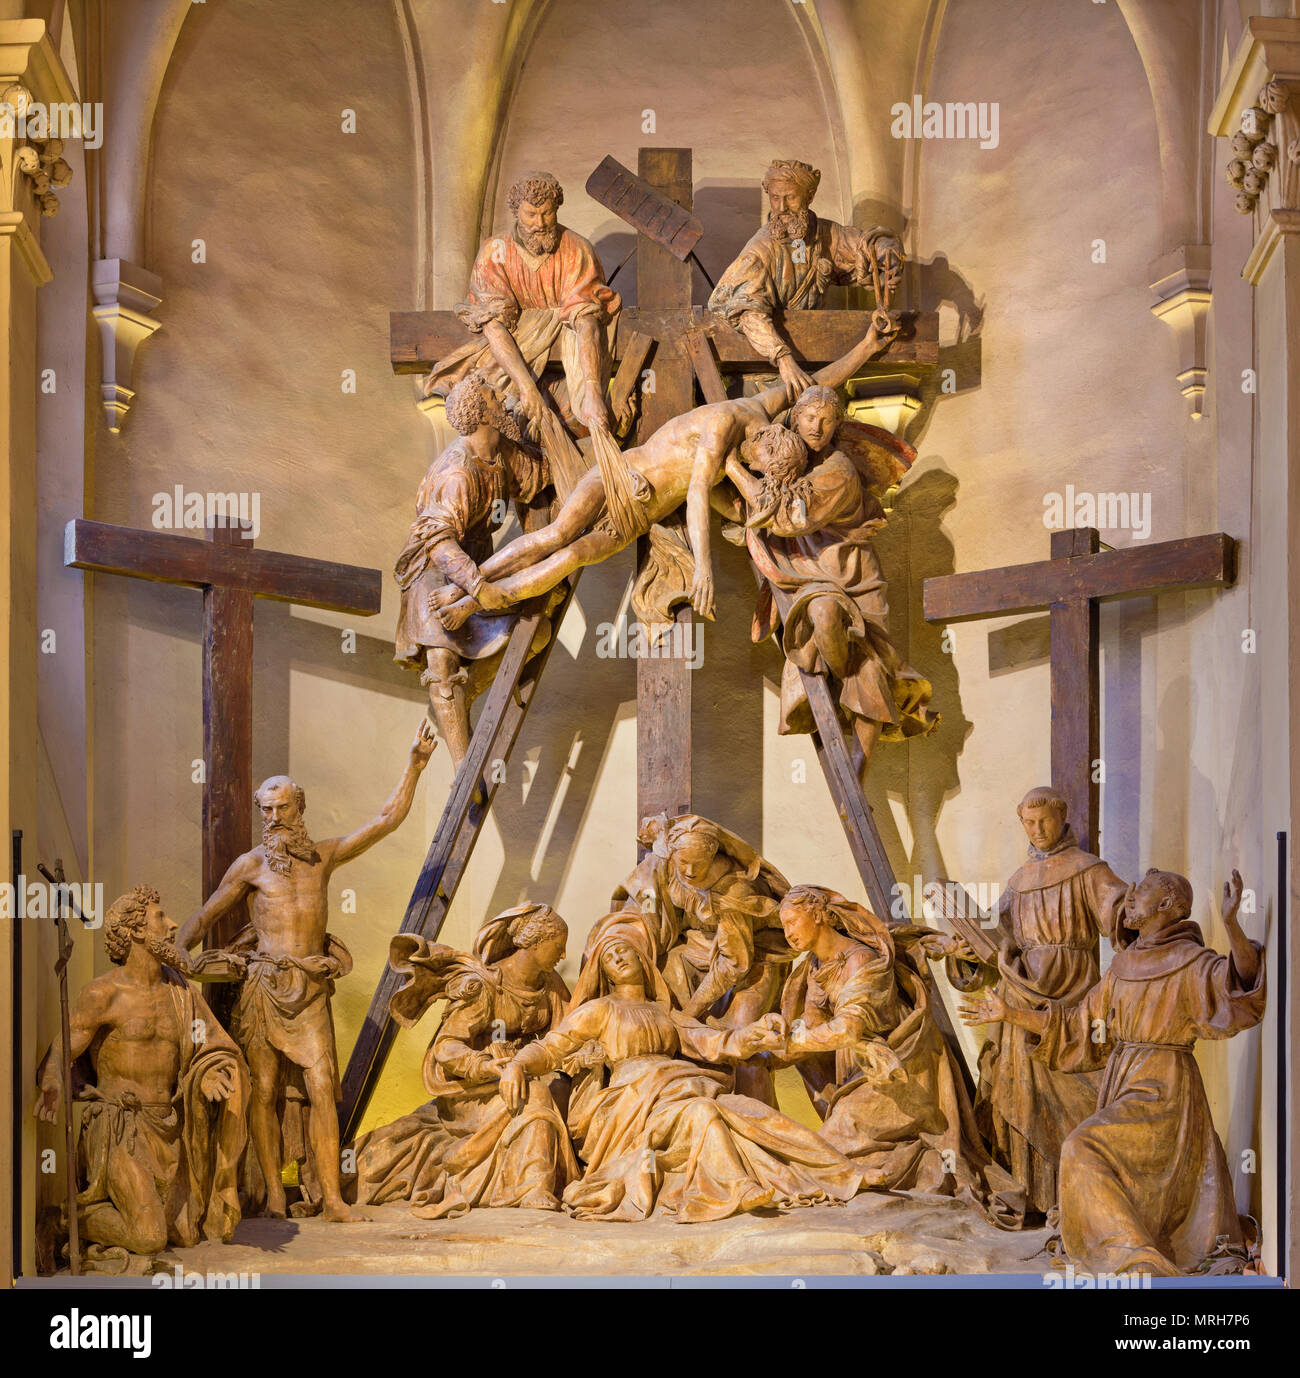 REGGIO EMILIA, Italia - 14 Aprile 2018: Il gruppo scultoreo della Deposizione della Croce nella chiesa di San Francesco da Antonio Begarelli. Foto Stock